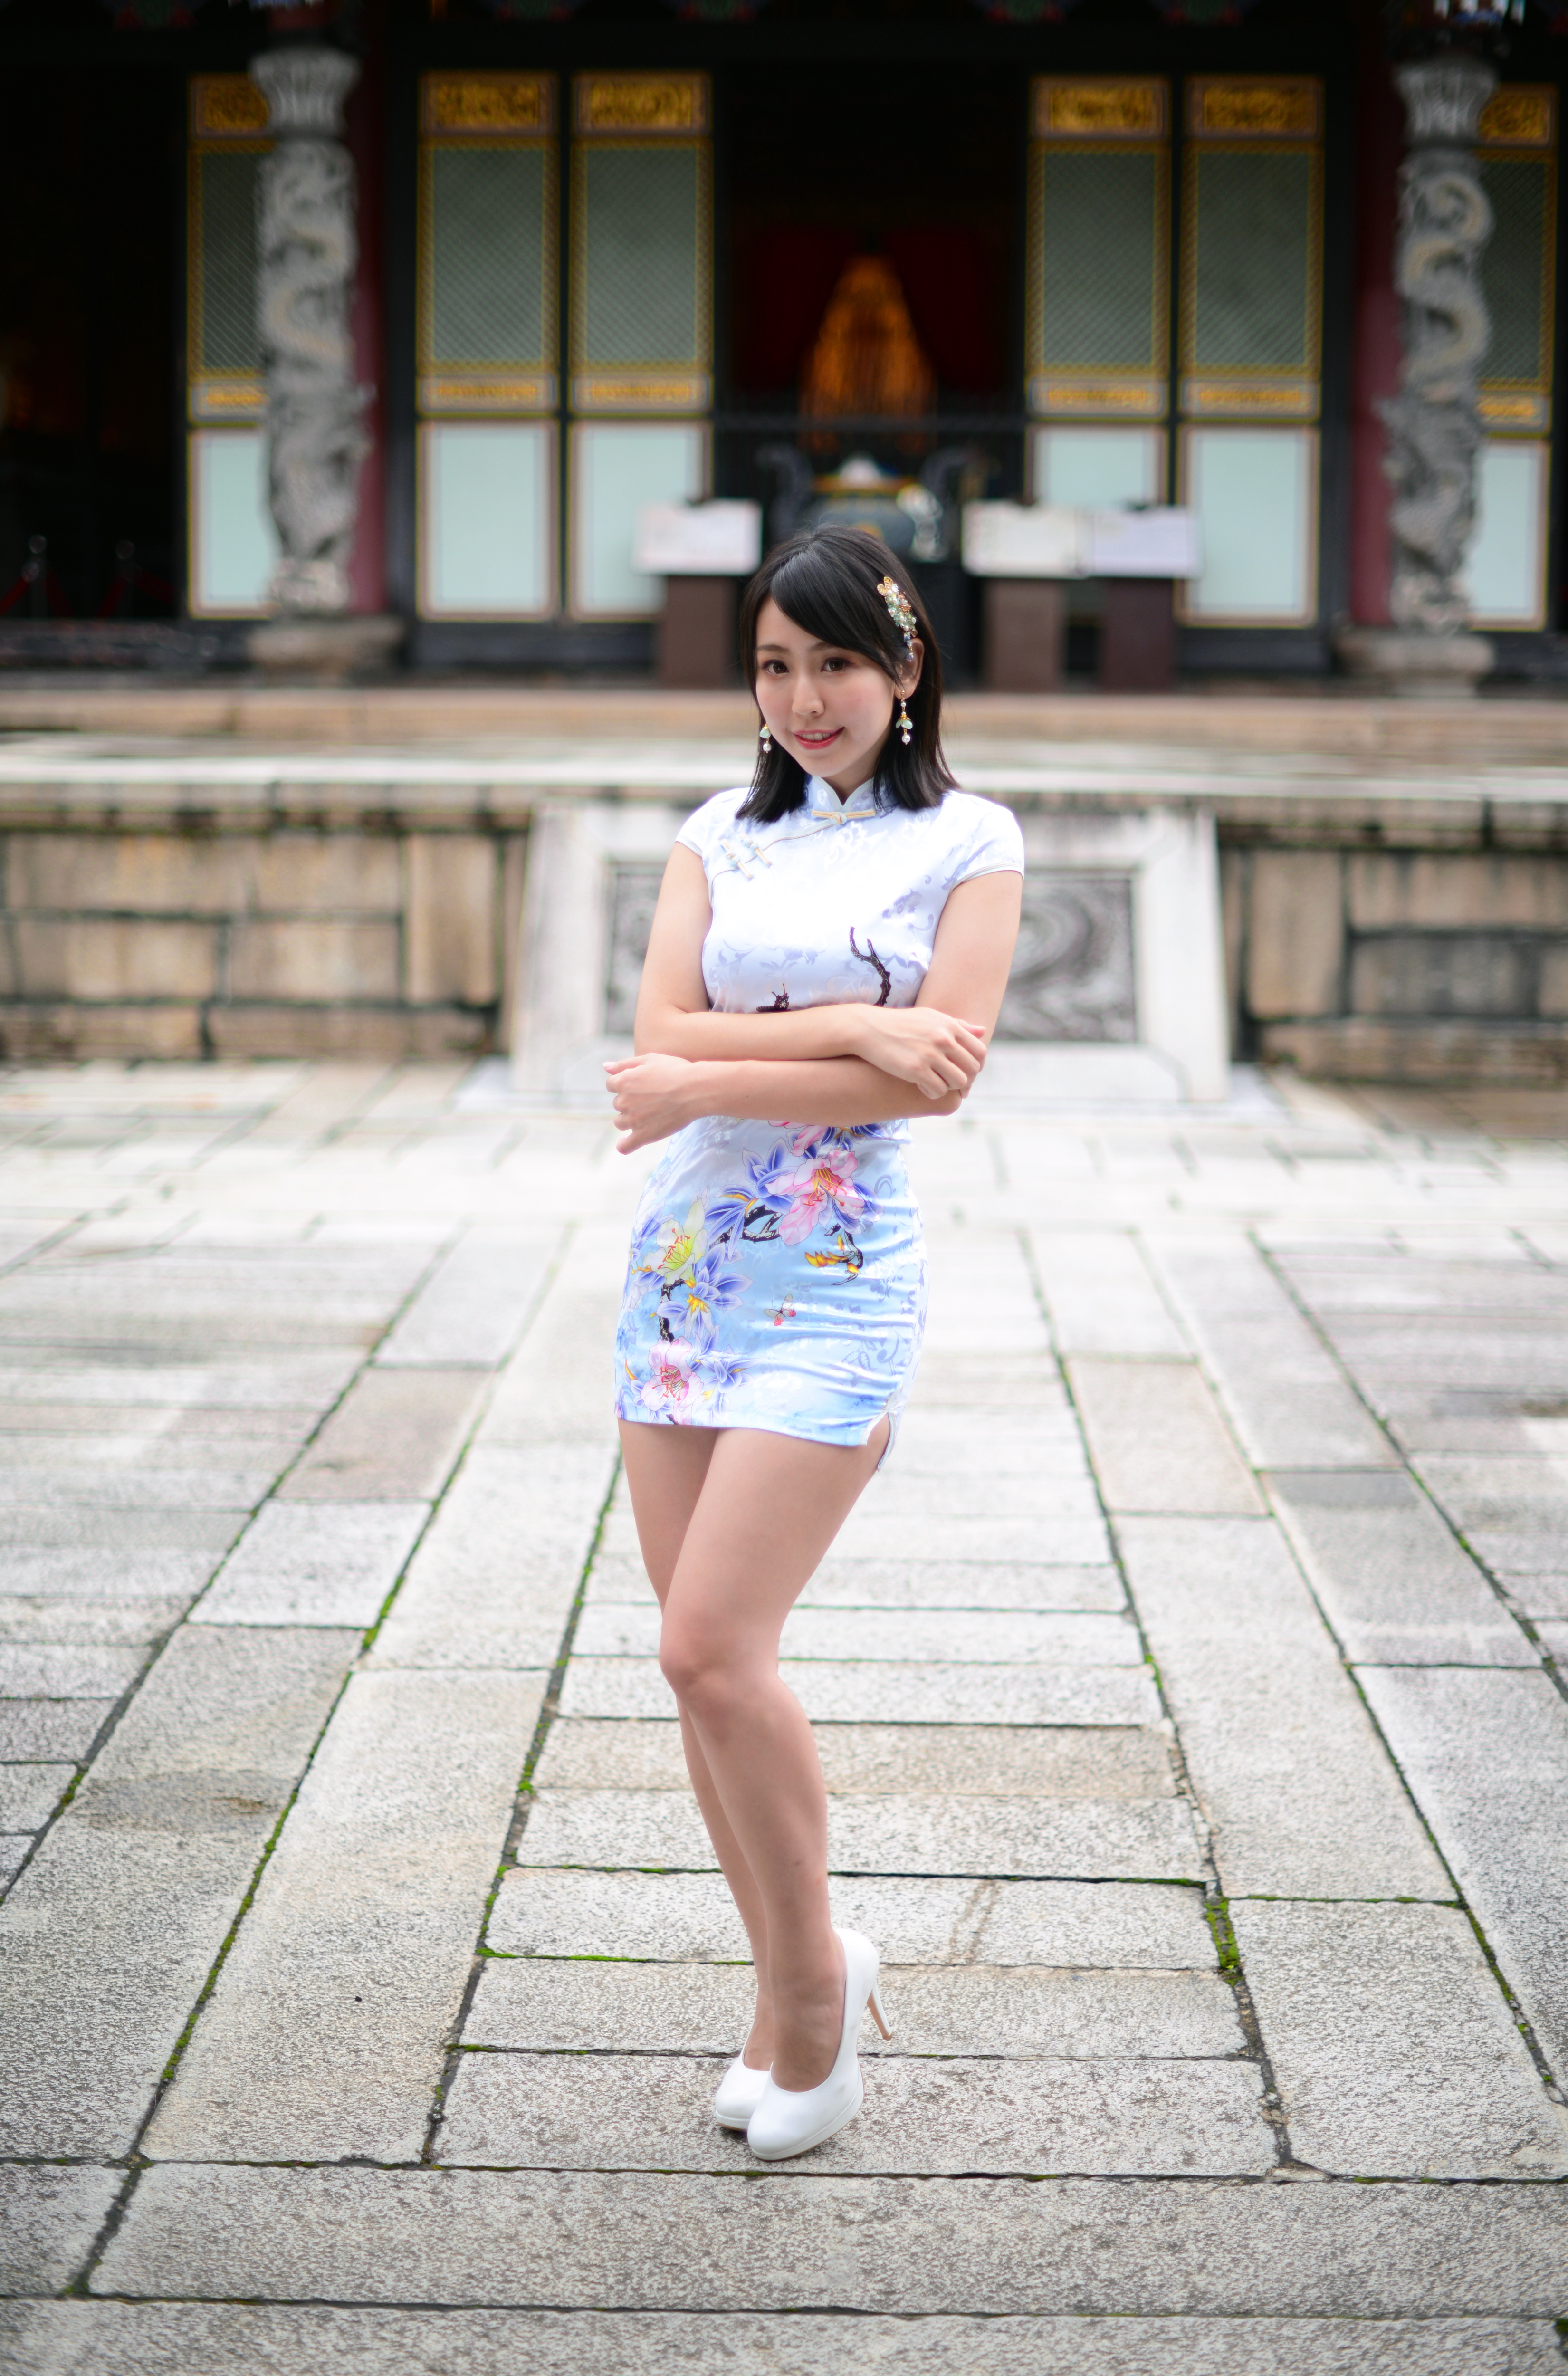 Ccplay1211 Women Model Dress Cheongsam Outdoors Women Outdoors Asian Heels 3300x5000